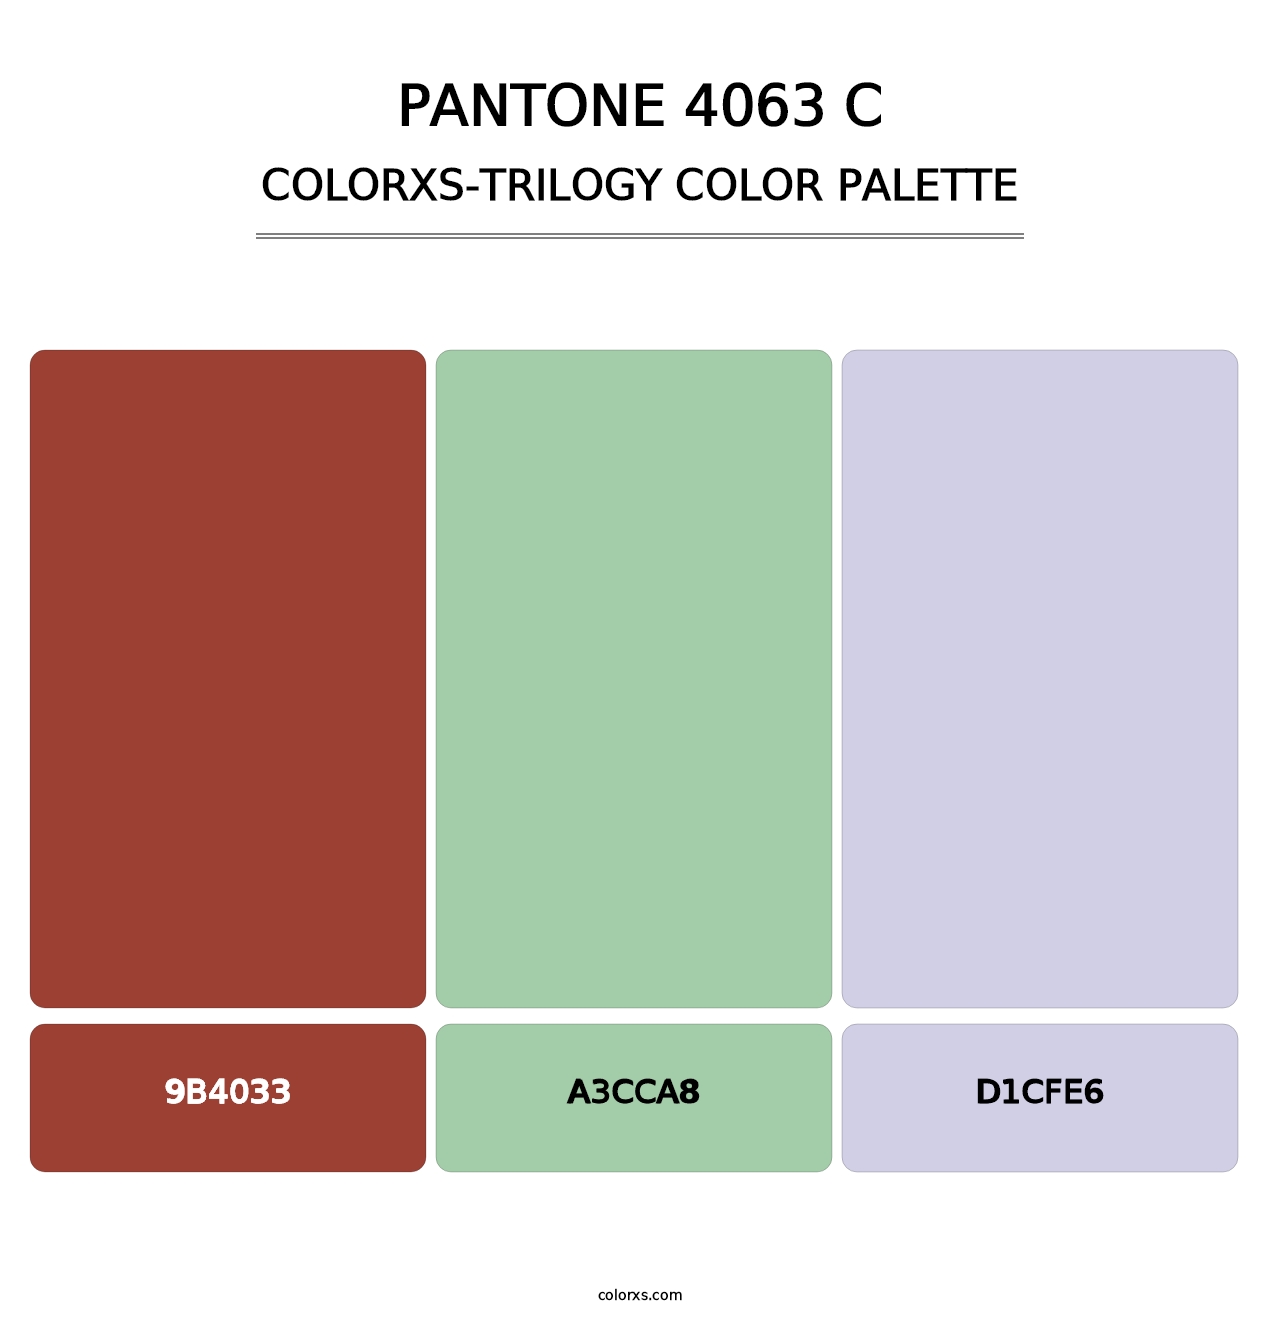 PANTONE 4063 C - Colorxs Trilogy Palette